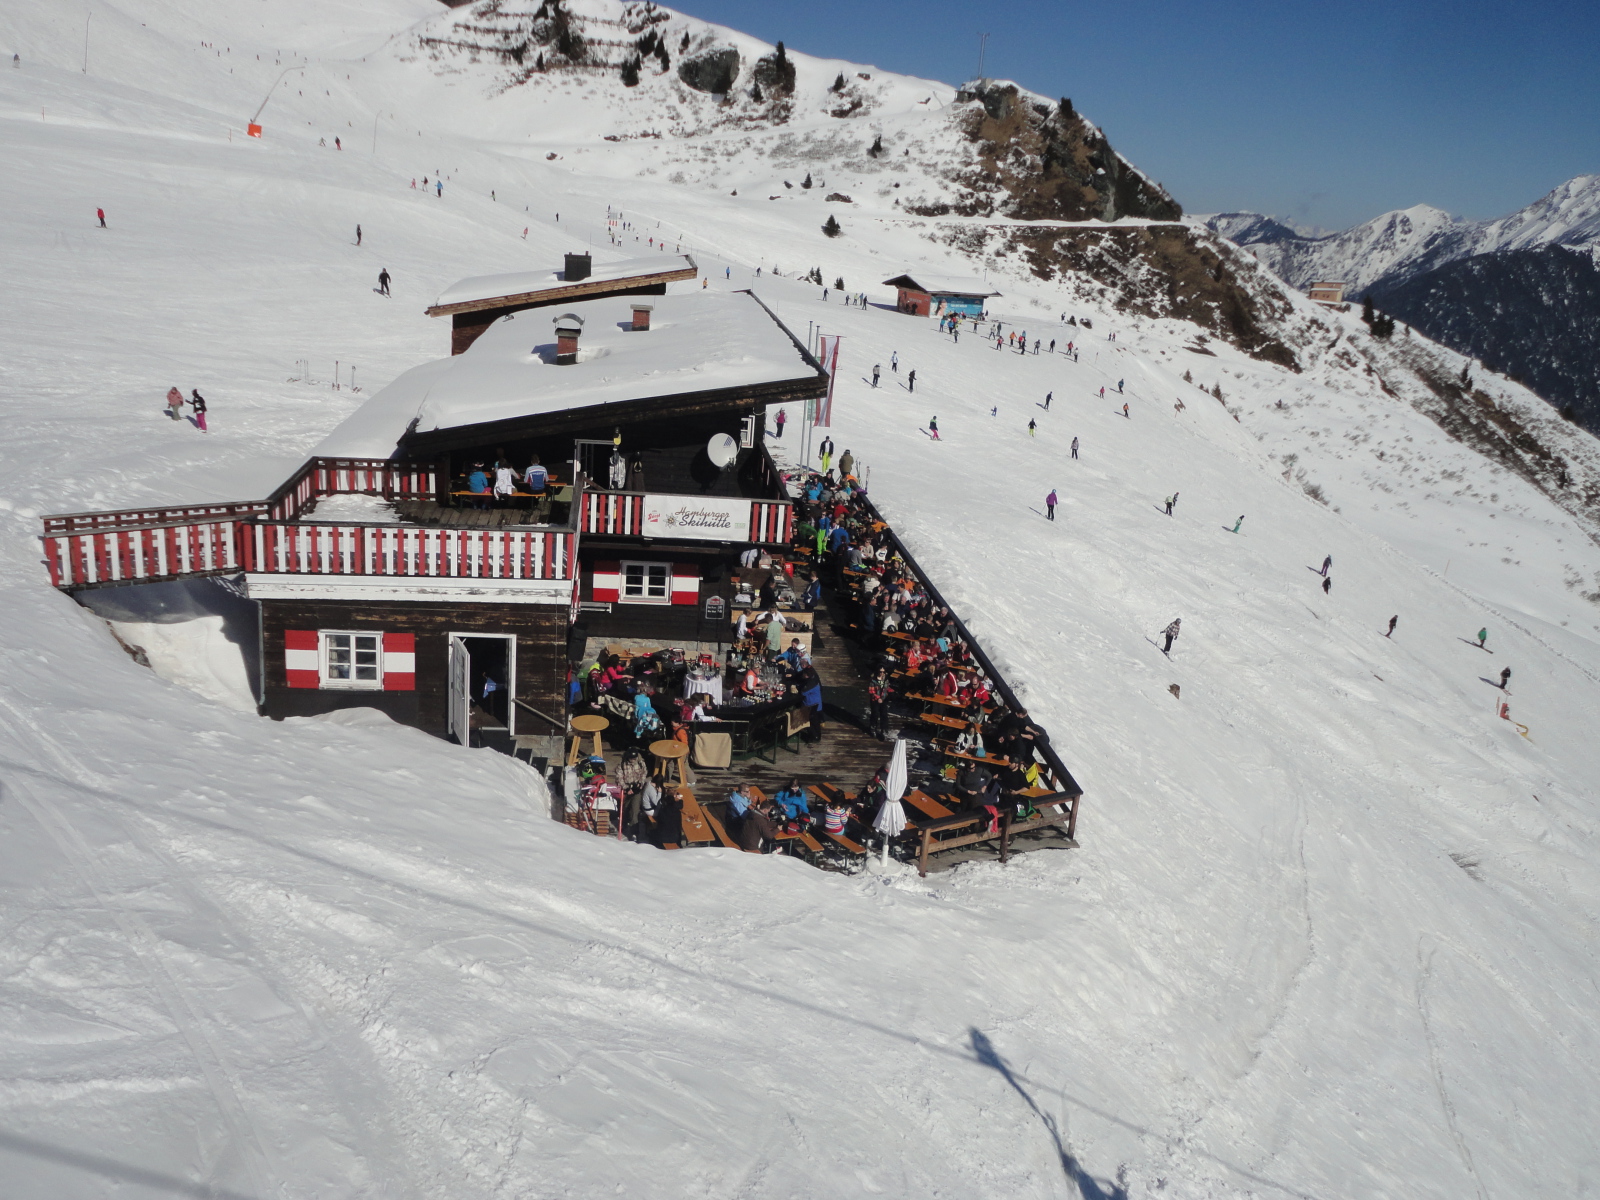 Tele a népszerű Hamburger Skihütte terasza